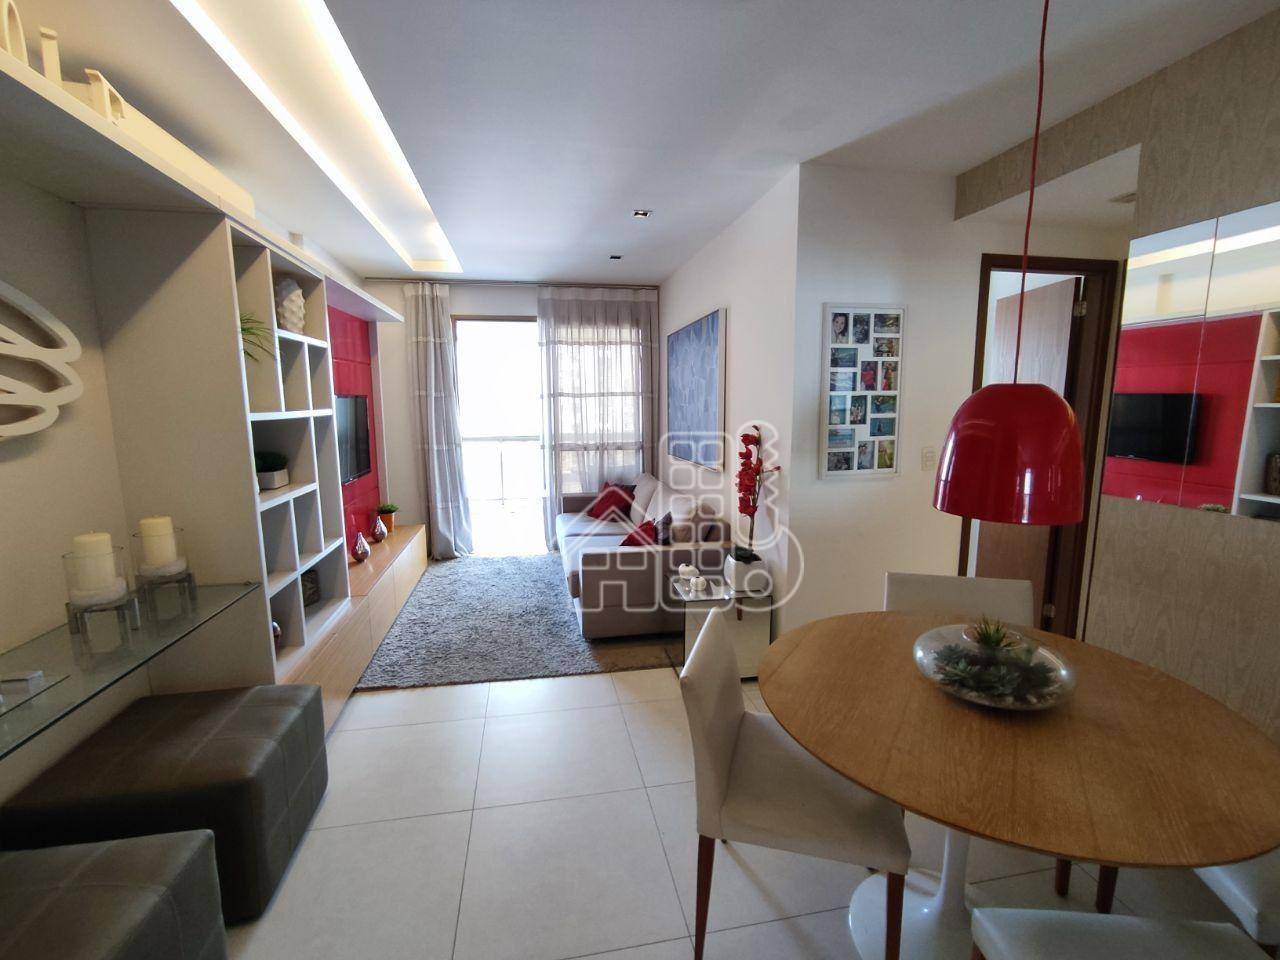 Apartamento com 2 dormitórios à venda, 80 m² por R$ 1.206.000,00 - Icaraí - Niterói/RJ